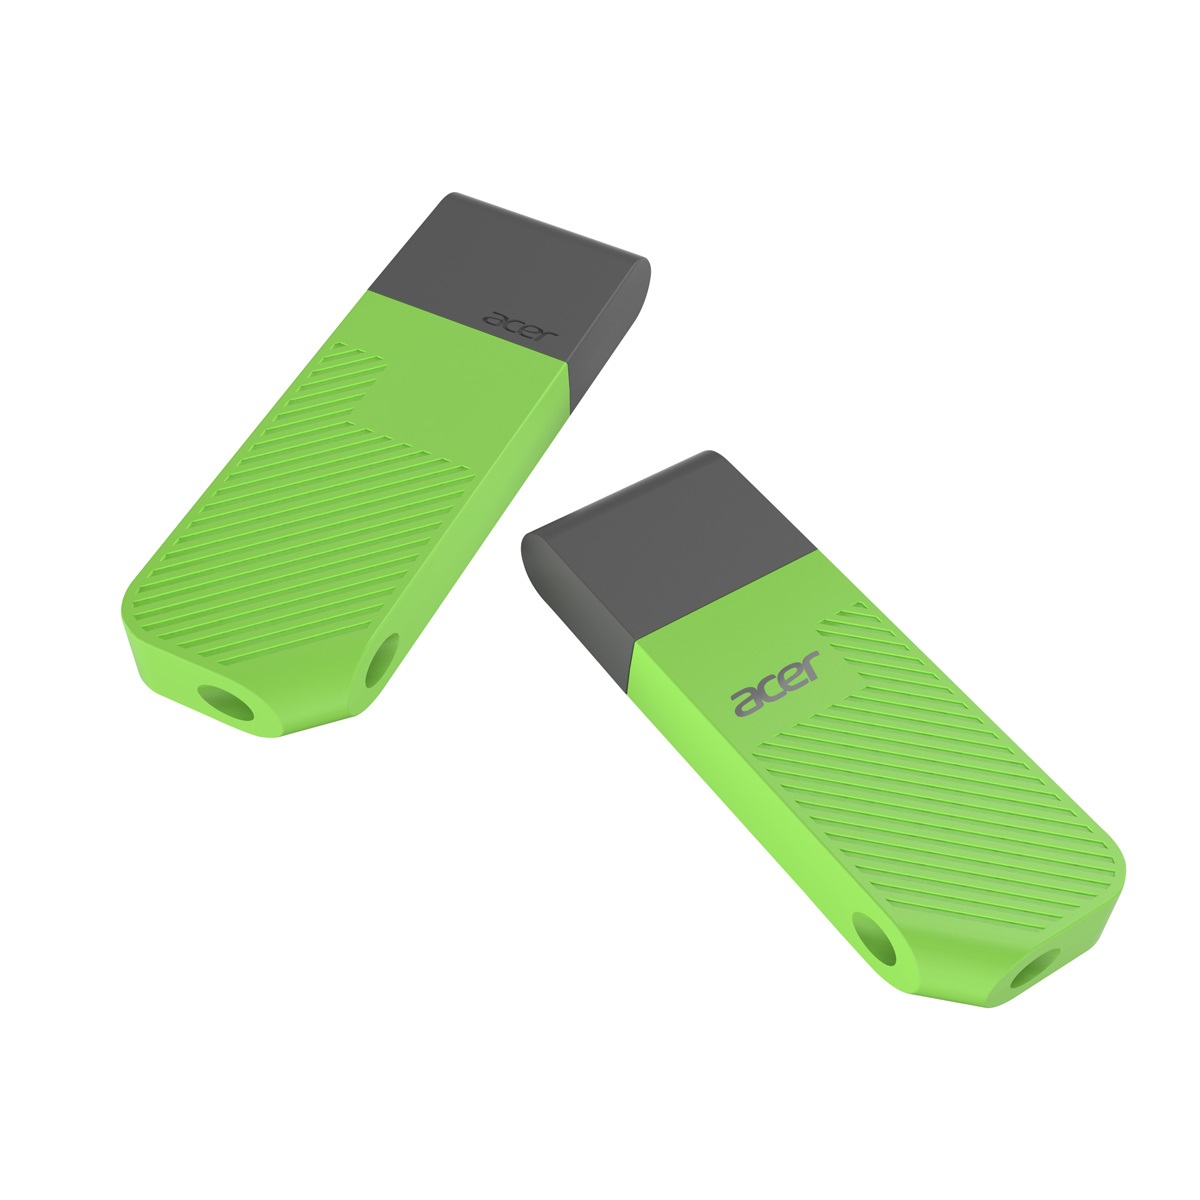 USB ACER UP300 256GB Green (UP300-256GB-GR) USB 3.2 Gen 1